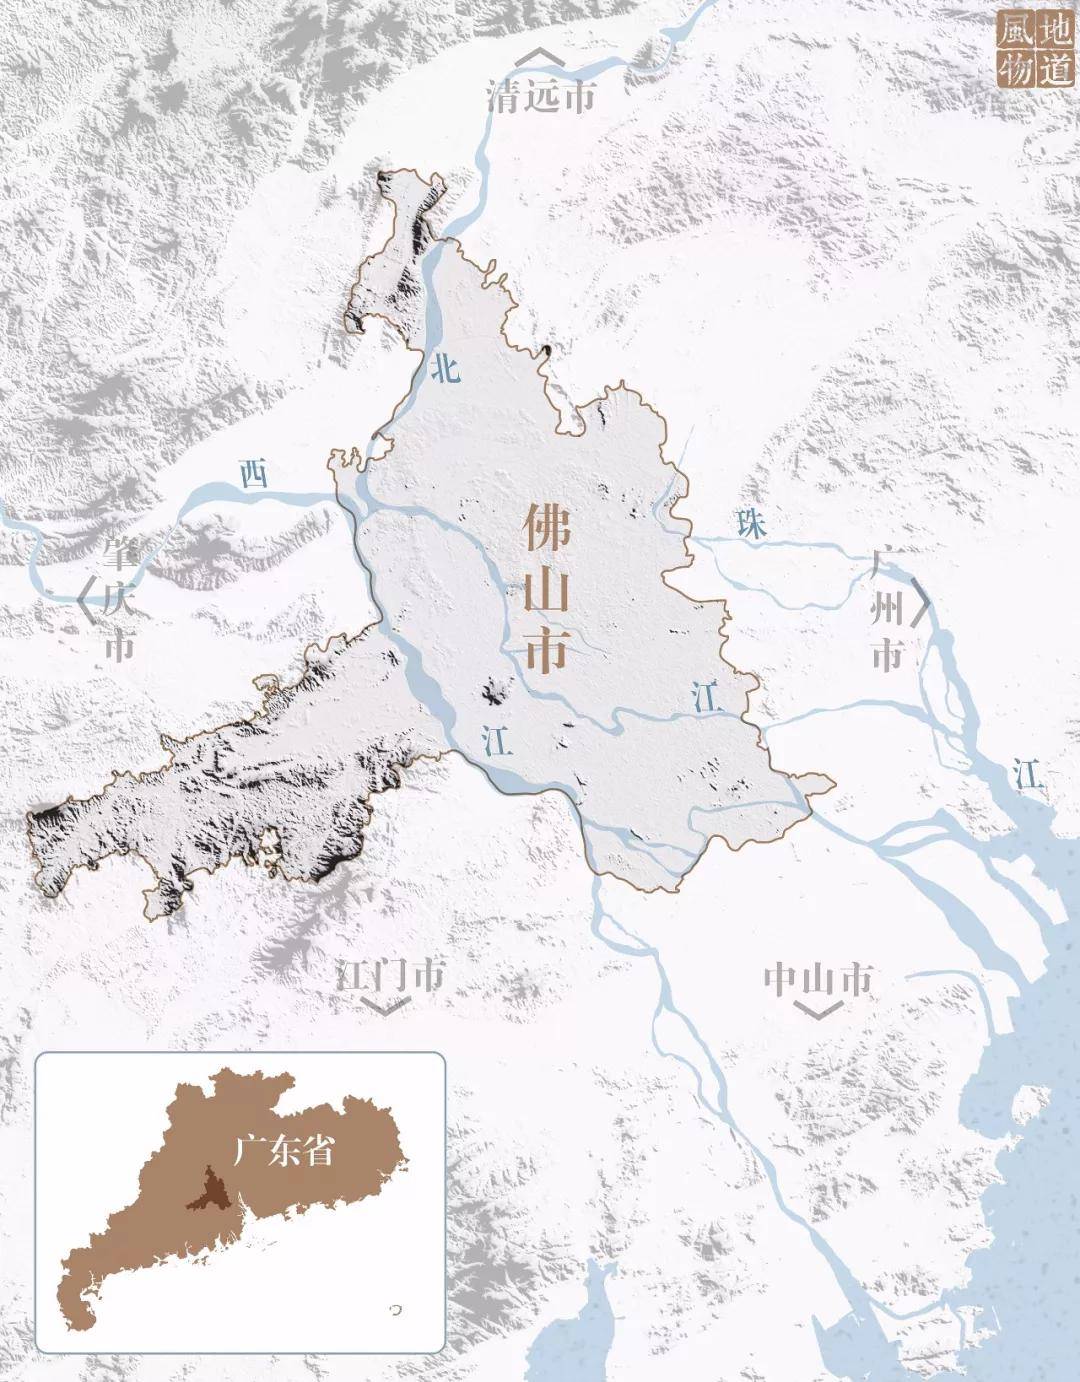 佛冈地理位置图片